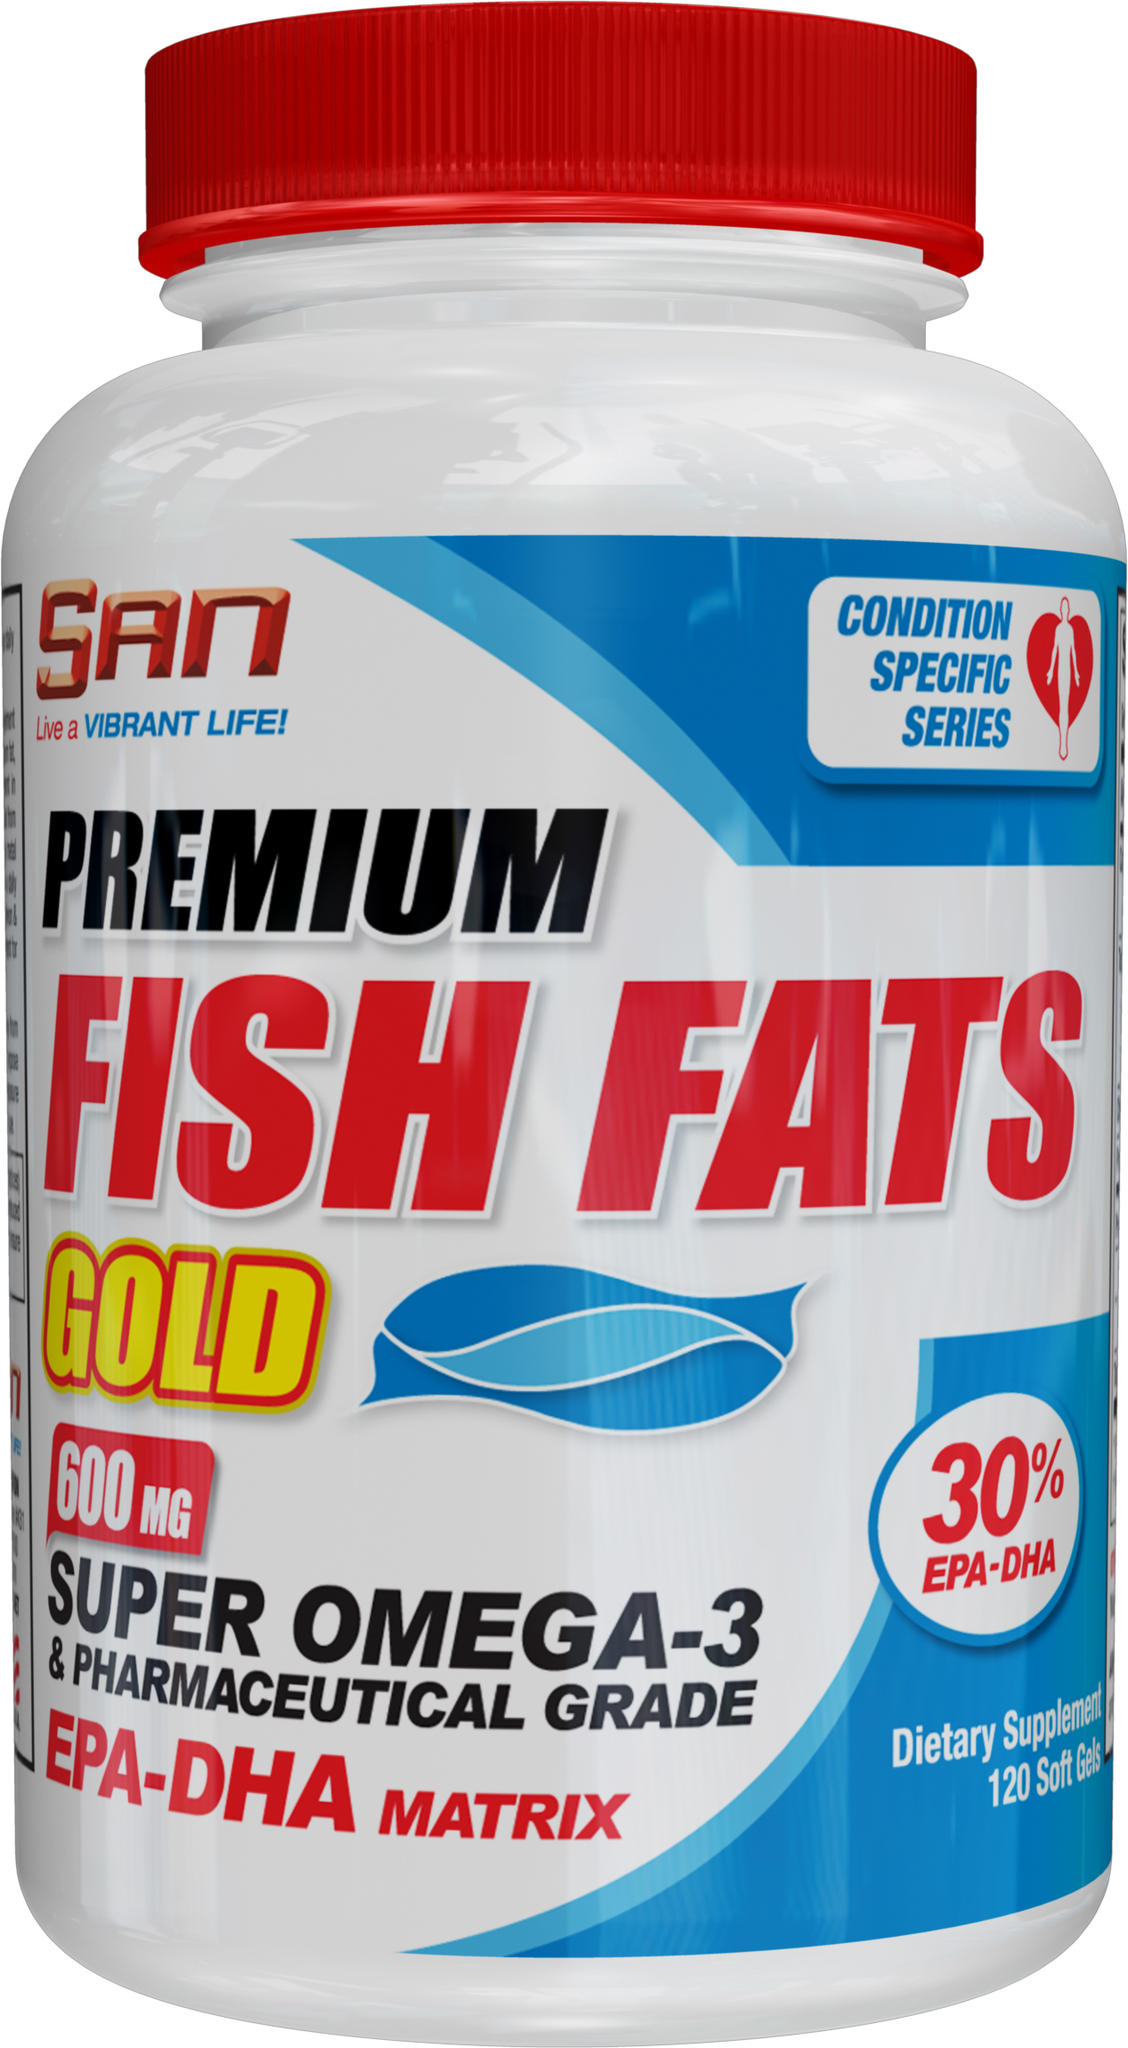 Premium Fish Fats Gold